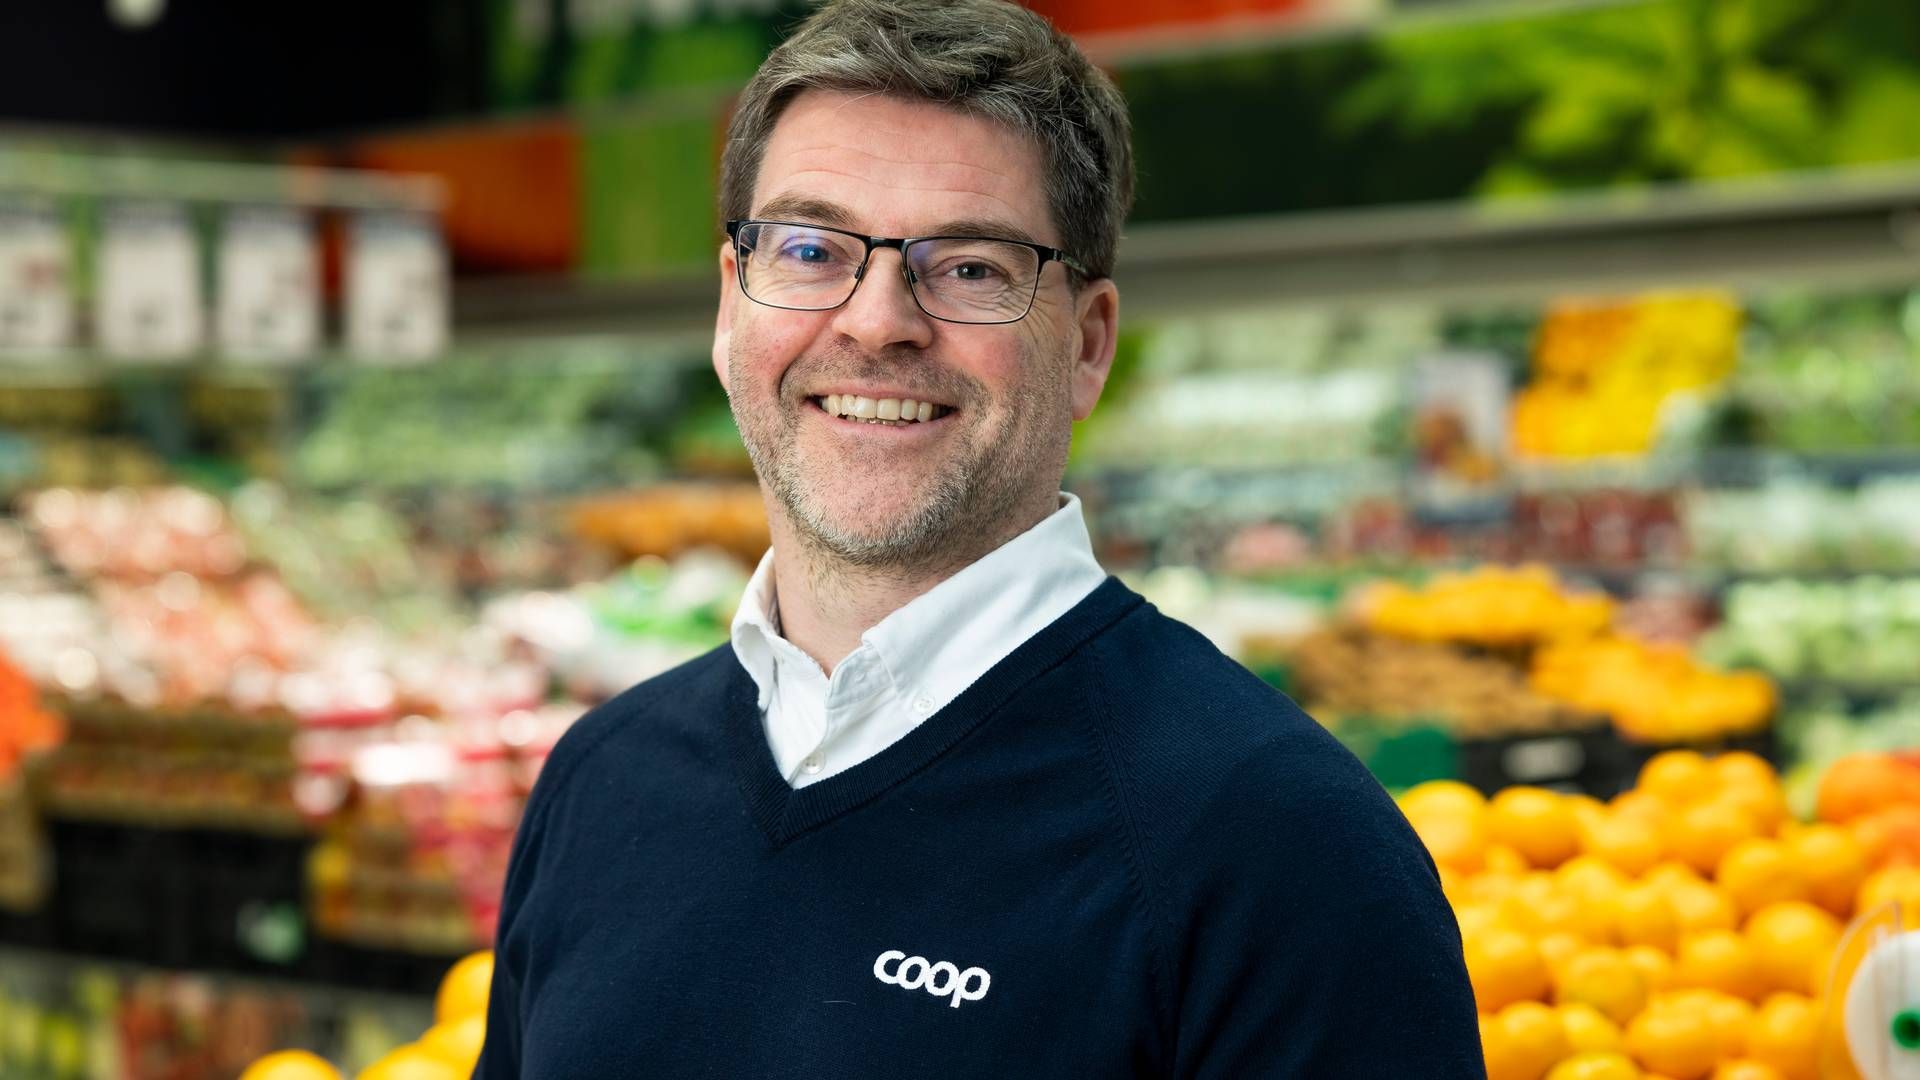 Egg og melk er det ingen fare med, sier kommunikasjonssjef Harald Kristiansen. | Foto: Coop